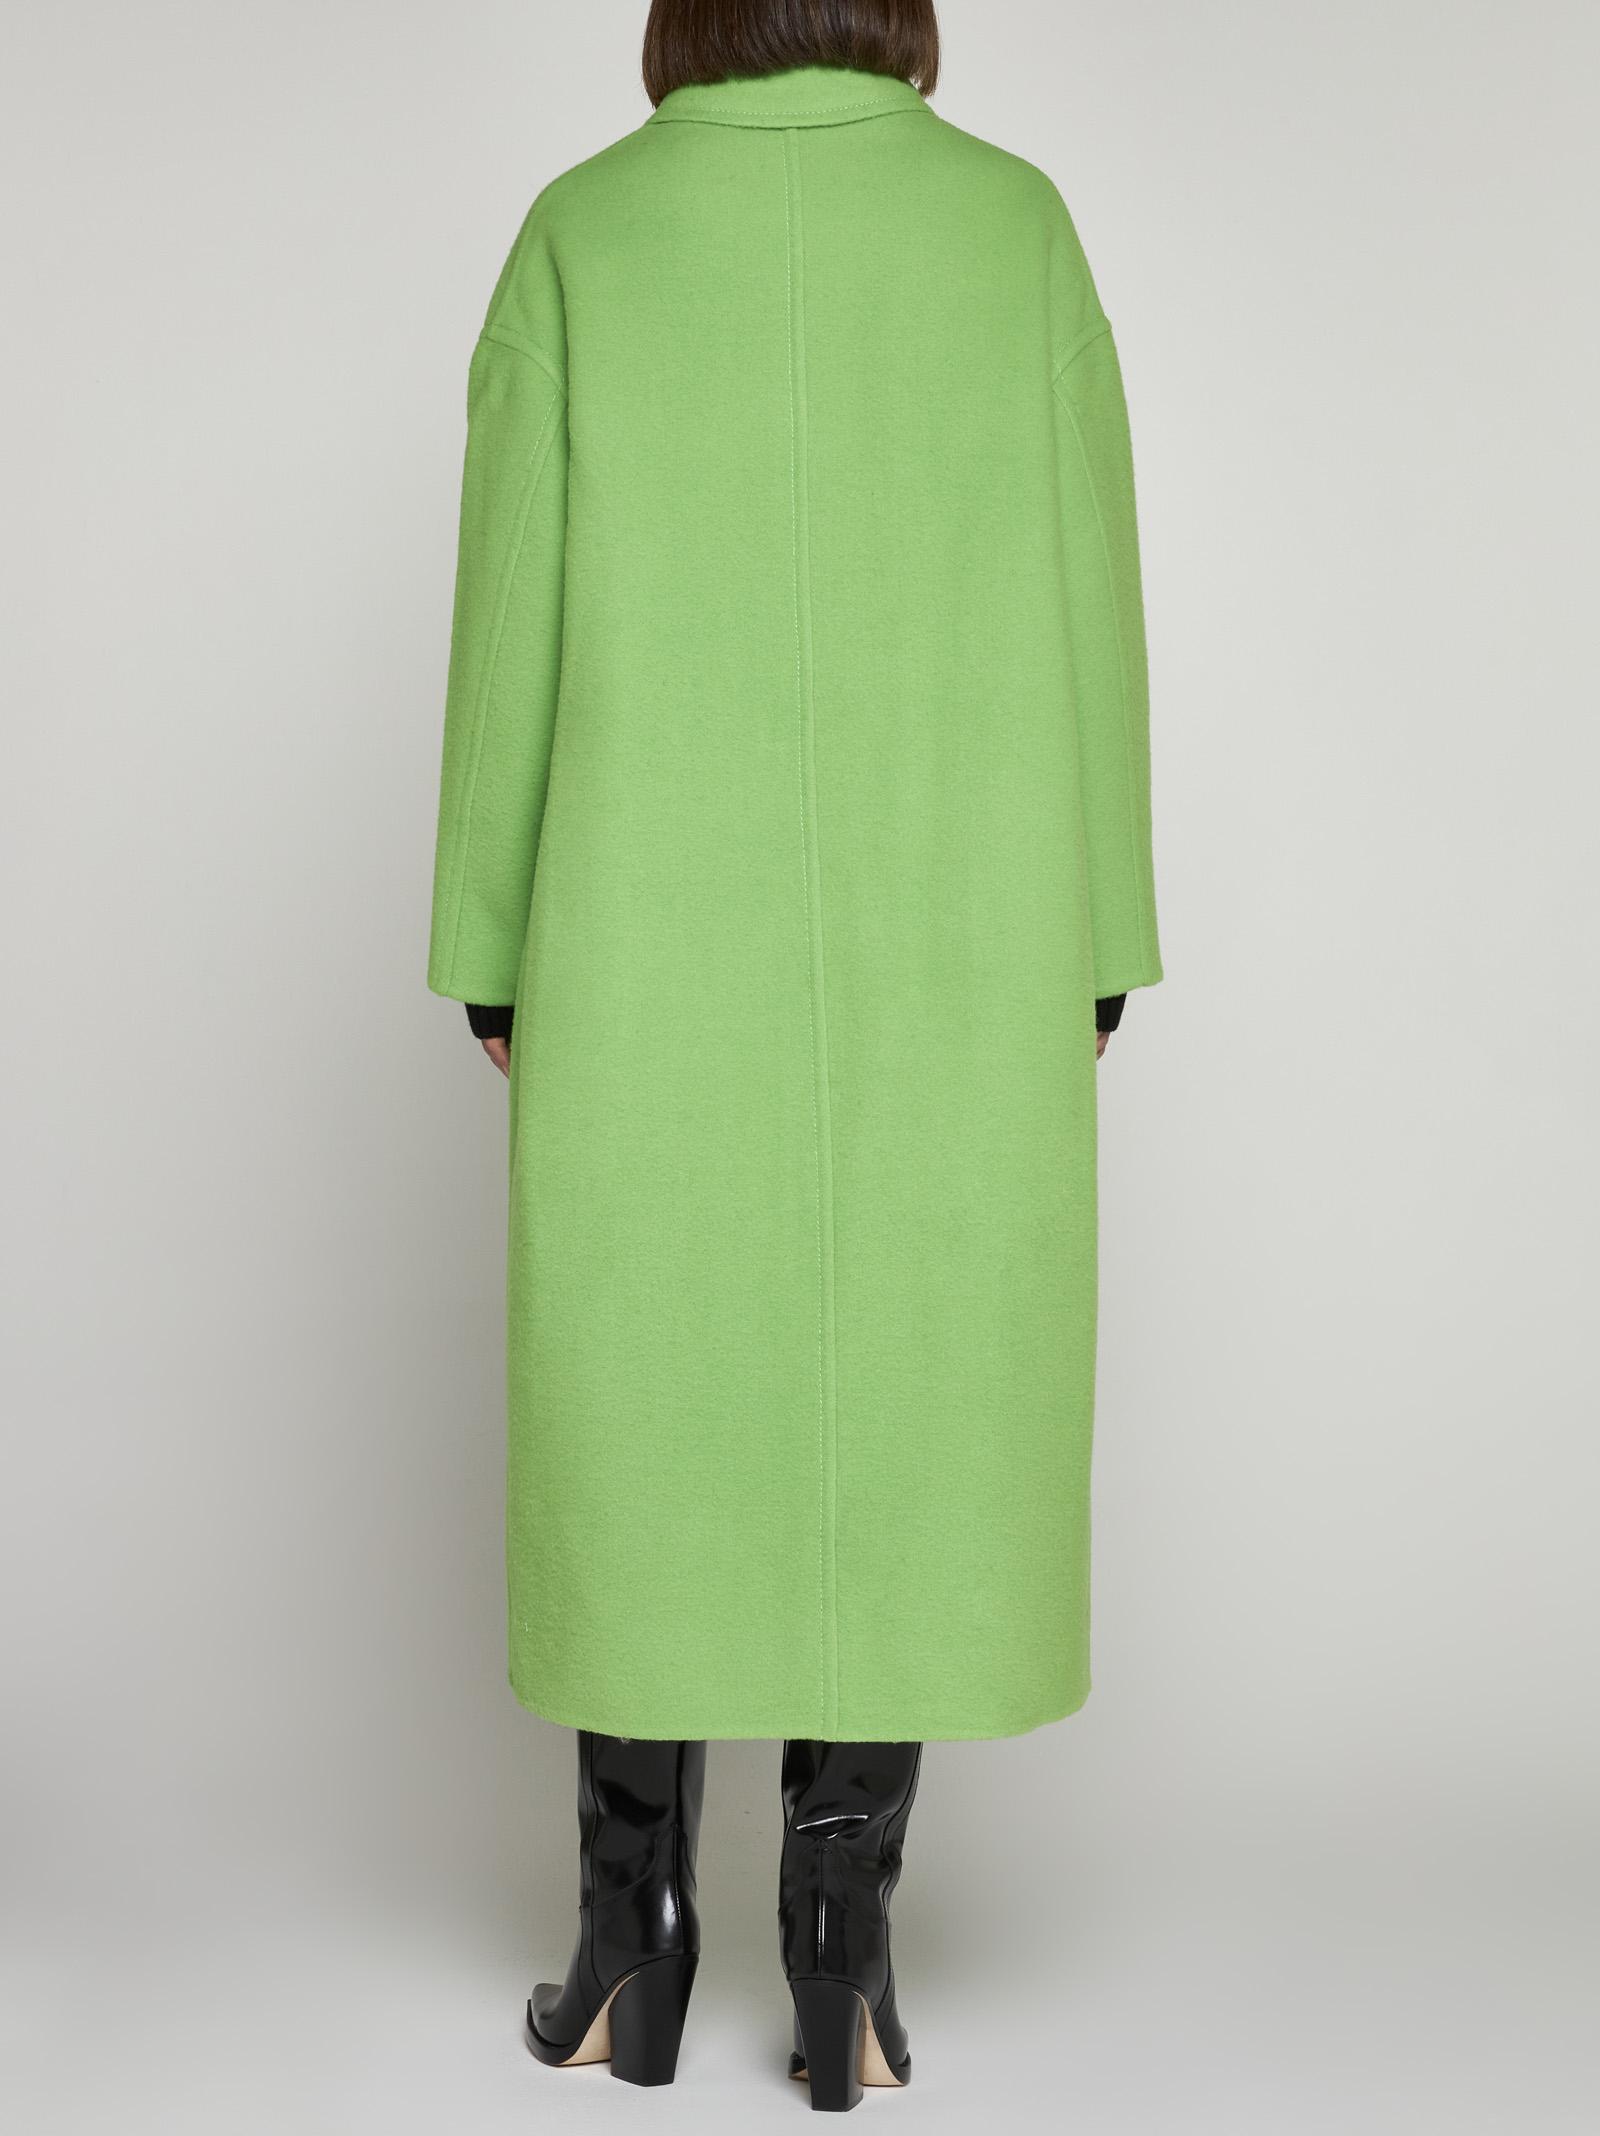 新品日本製 E318 used us vintage green oversize coat TLr1m-m88269973219 